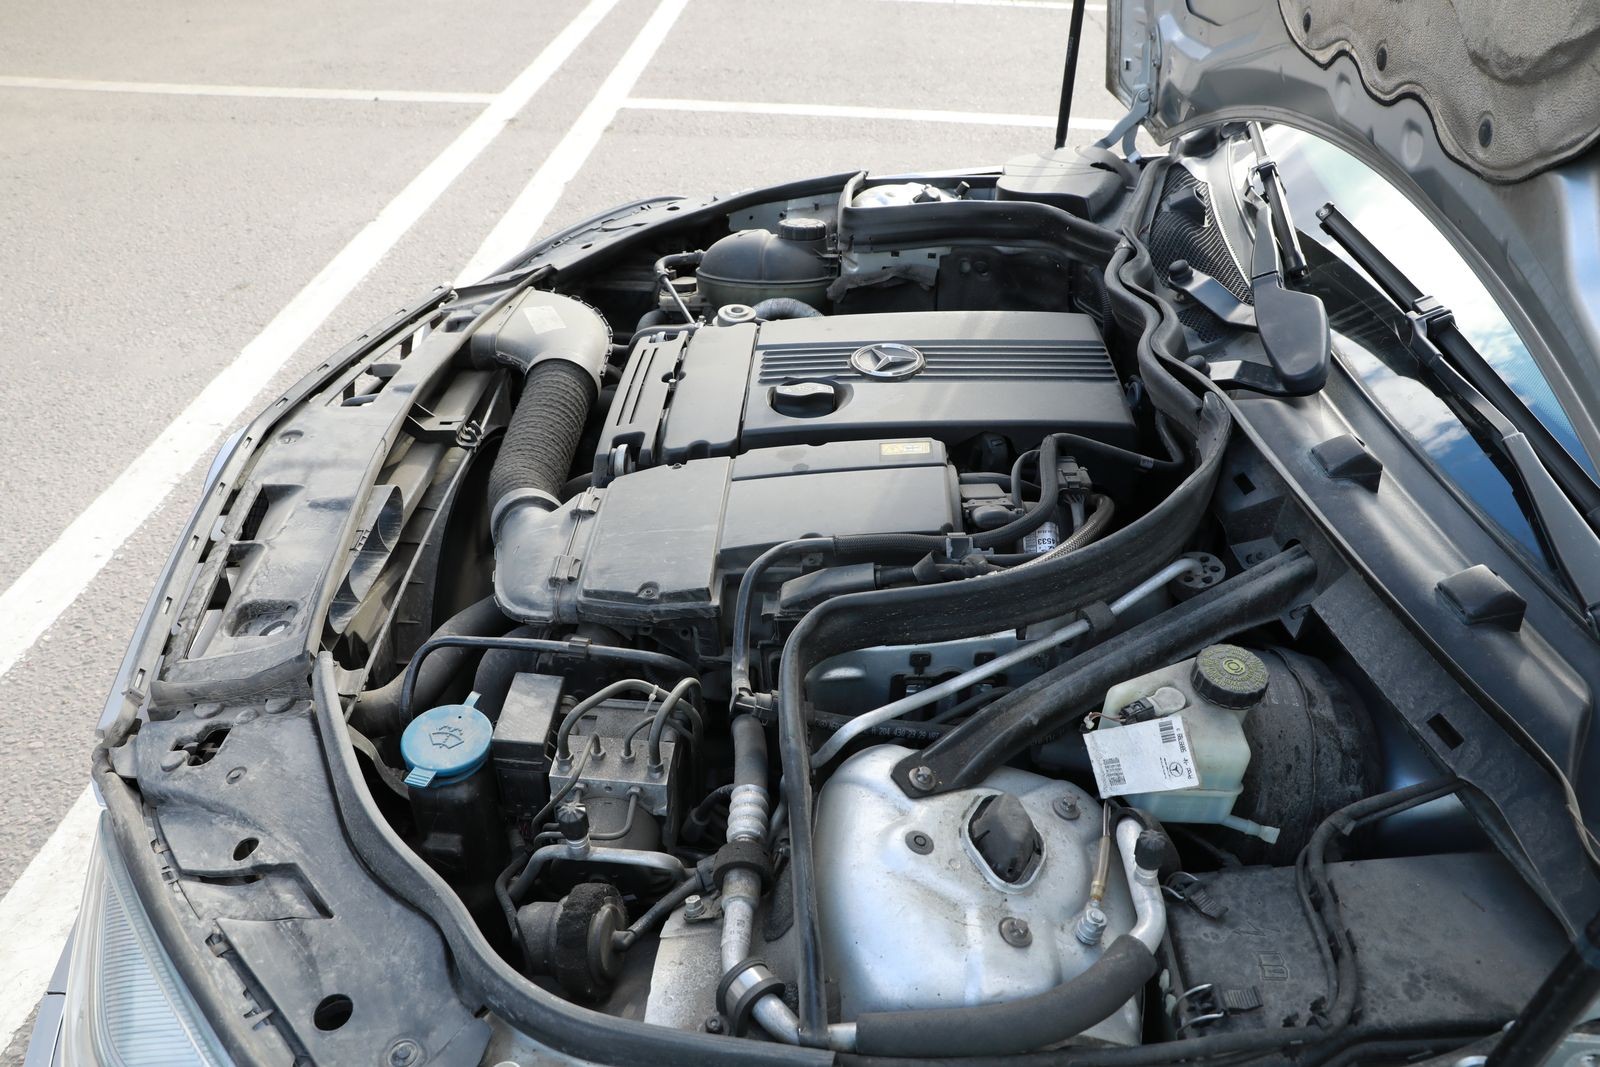 Mercedes-Benz C-Class W204 с пробегом: двигатели, трансмиссии, подвеска, тормозная система - – автомобильный журнал